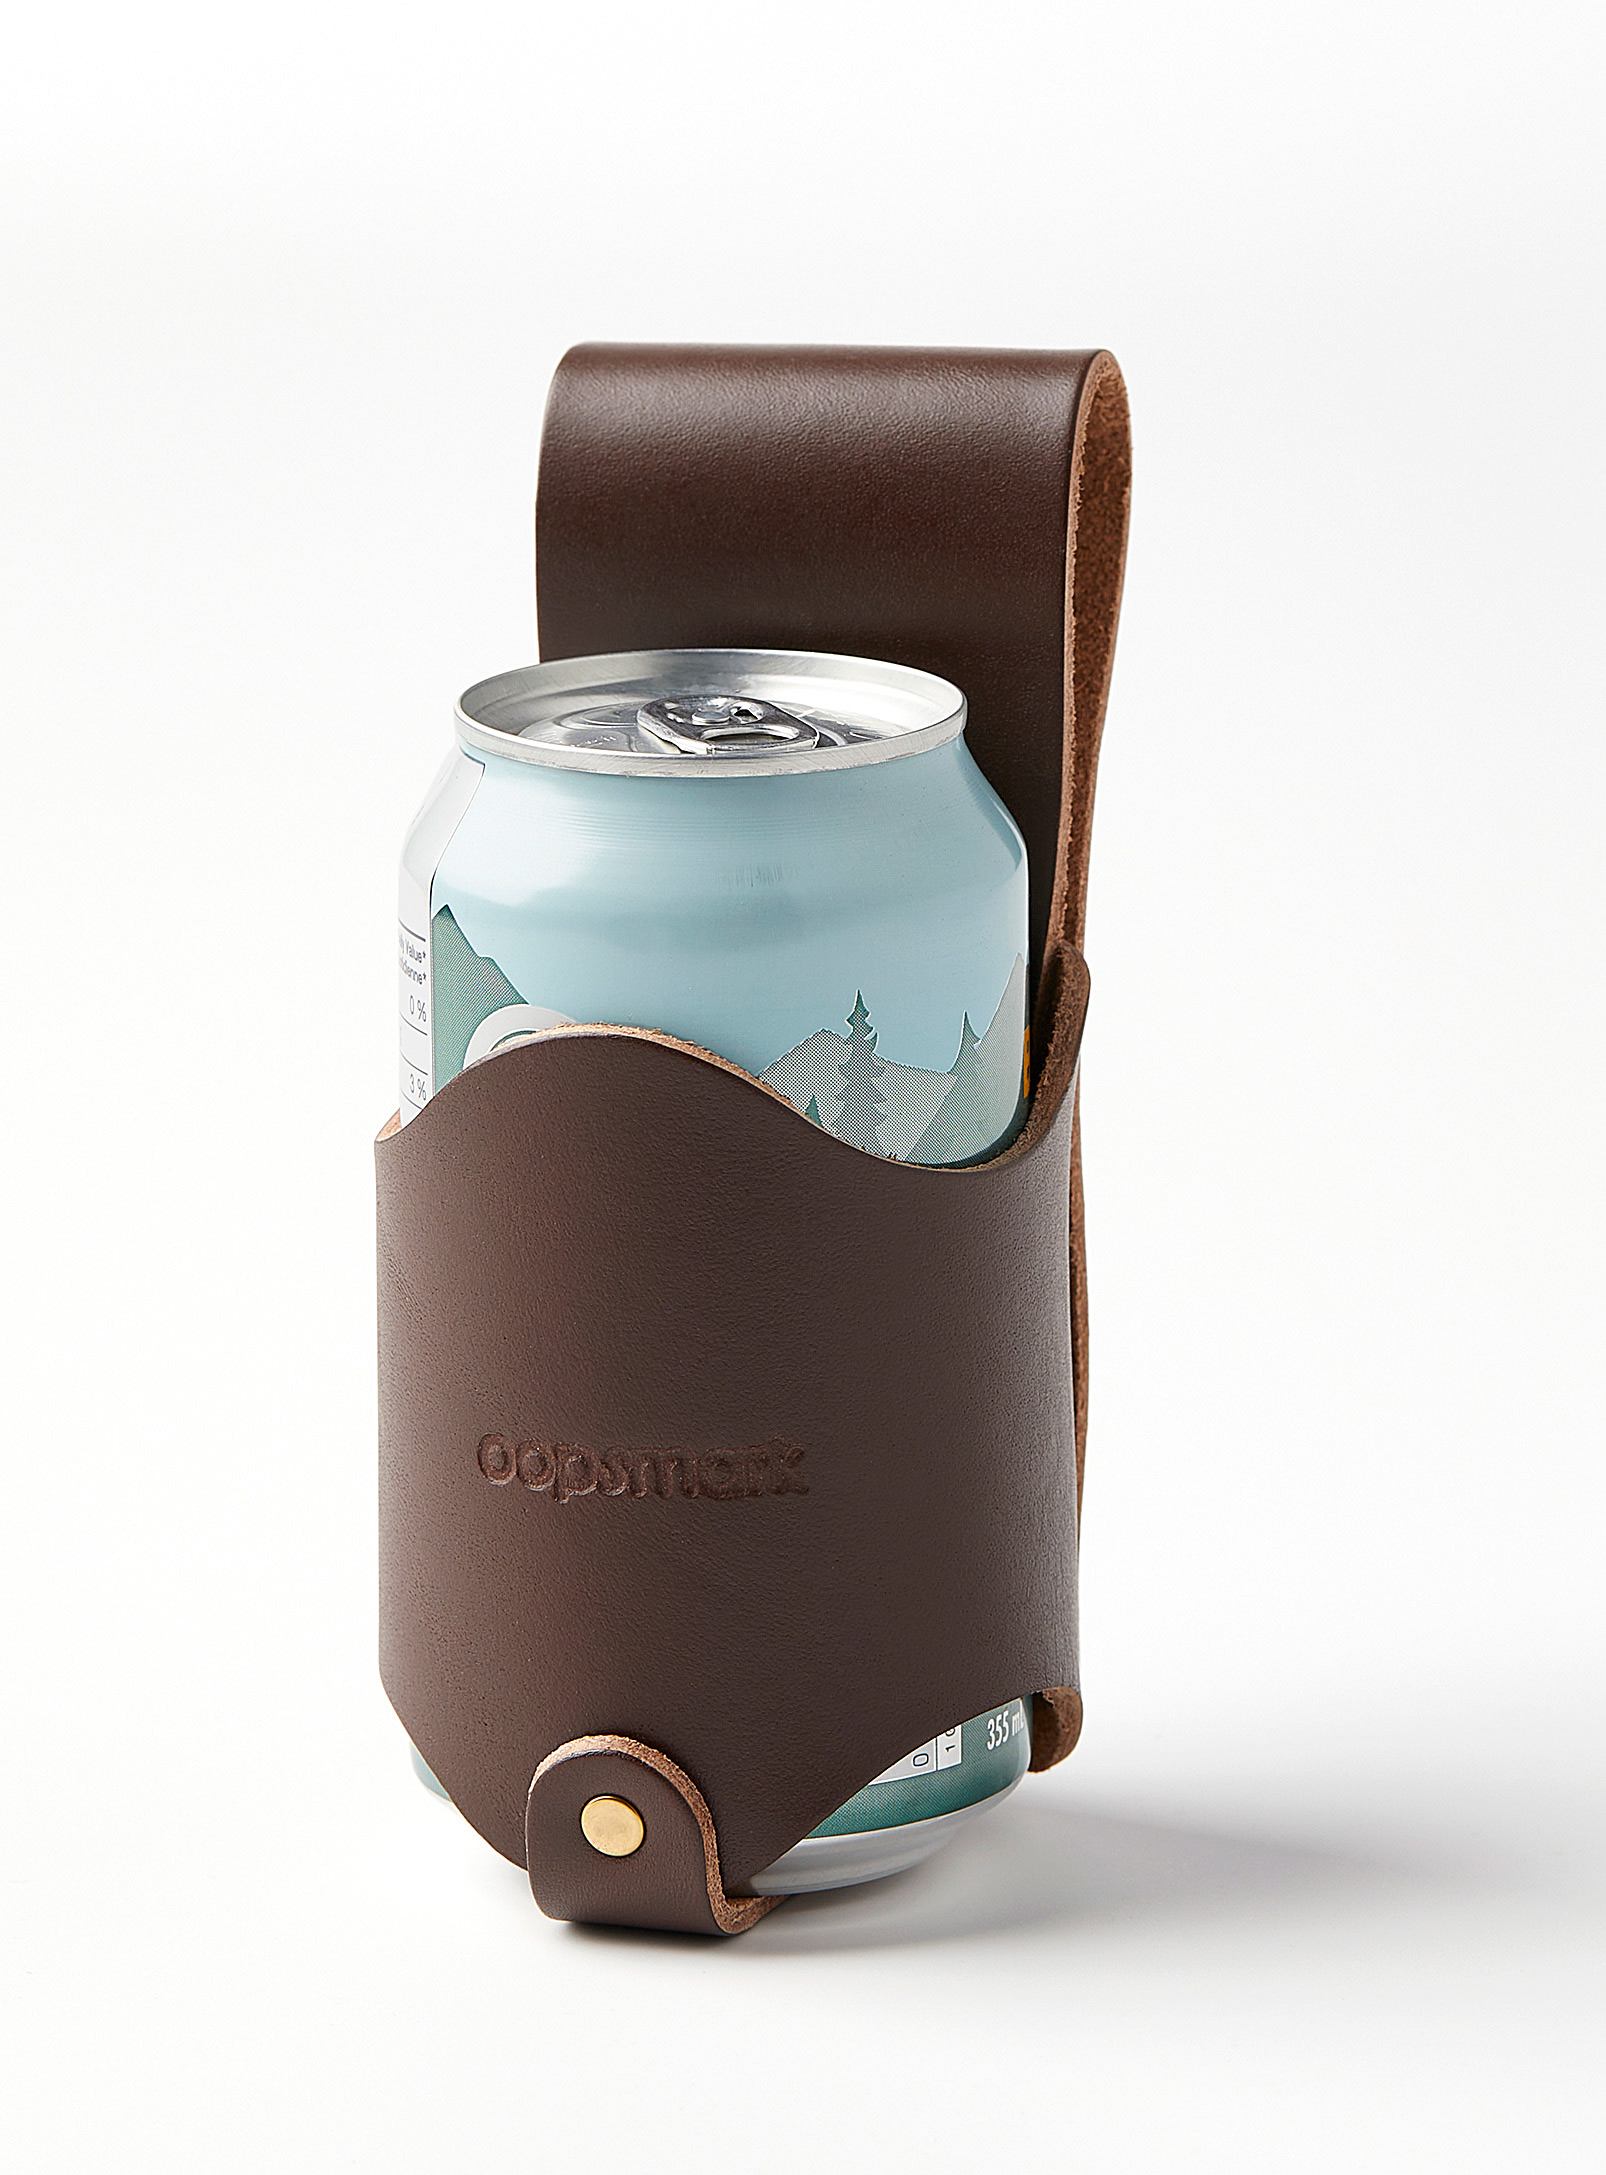 Oopsmark - Leather beer holder for belts